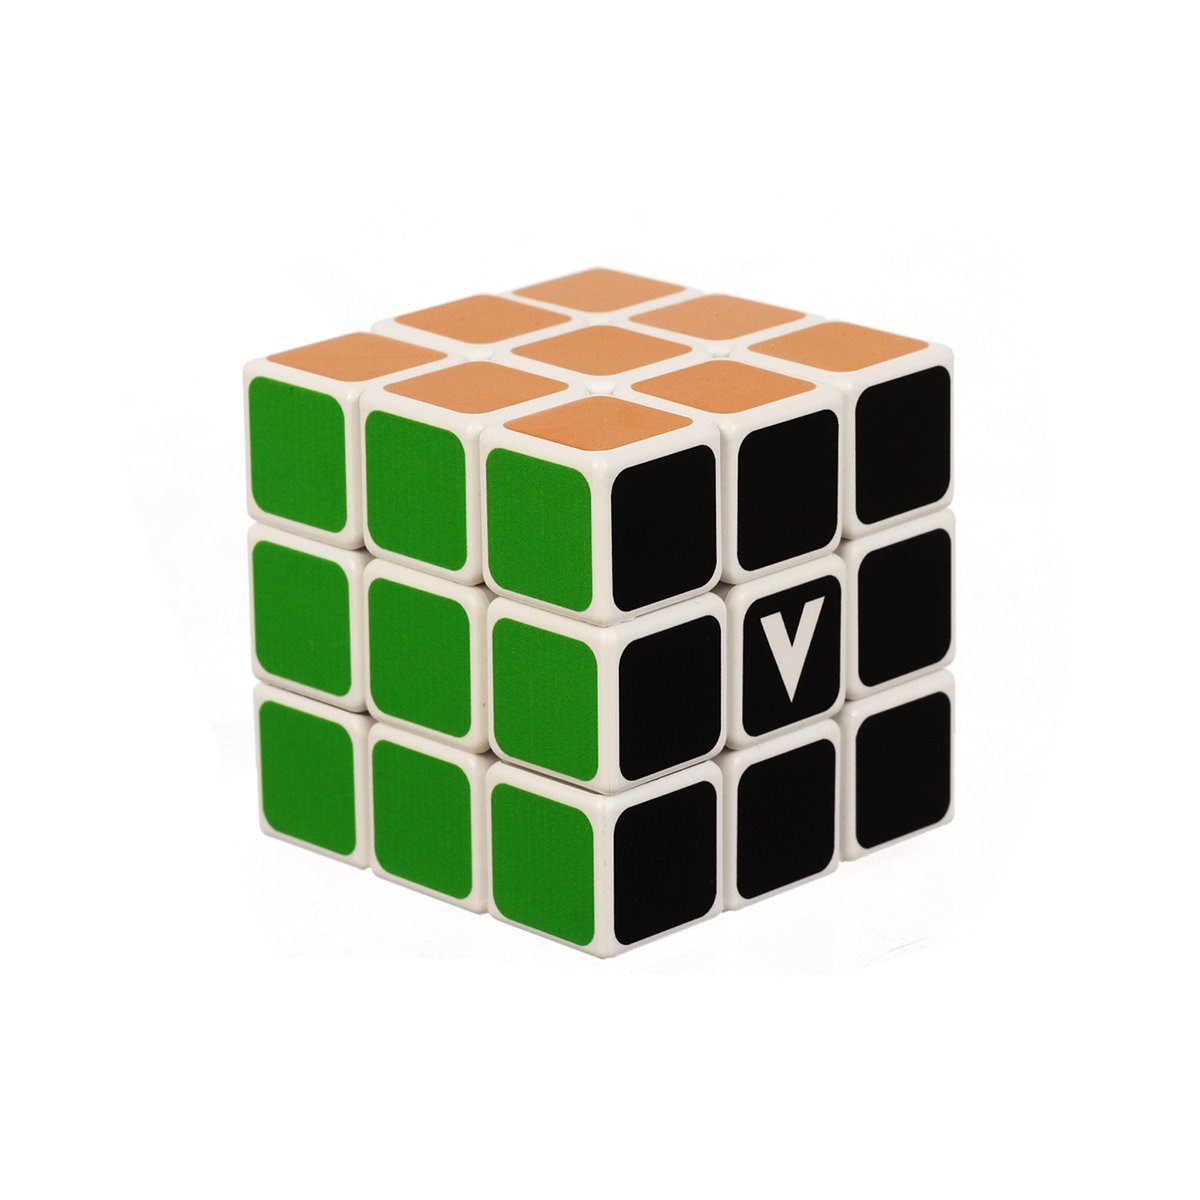  Cub Rubik - V-cube 3 | V-Cube 